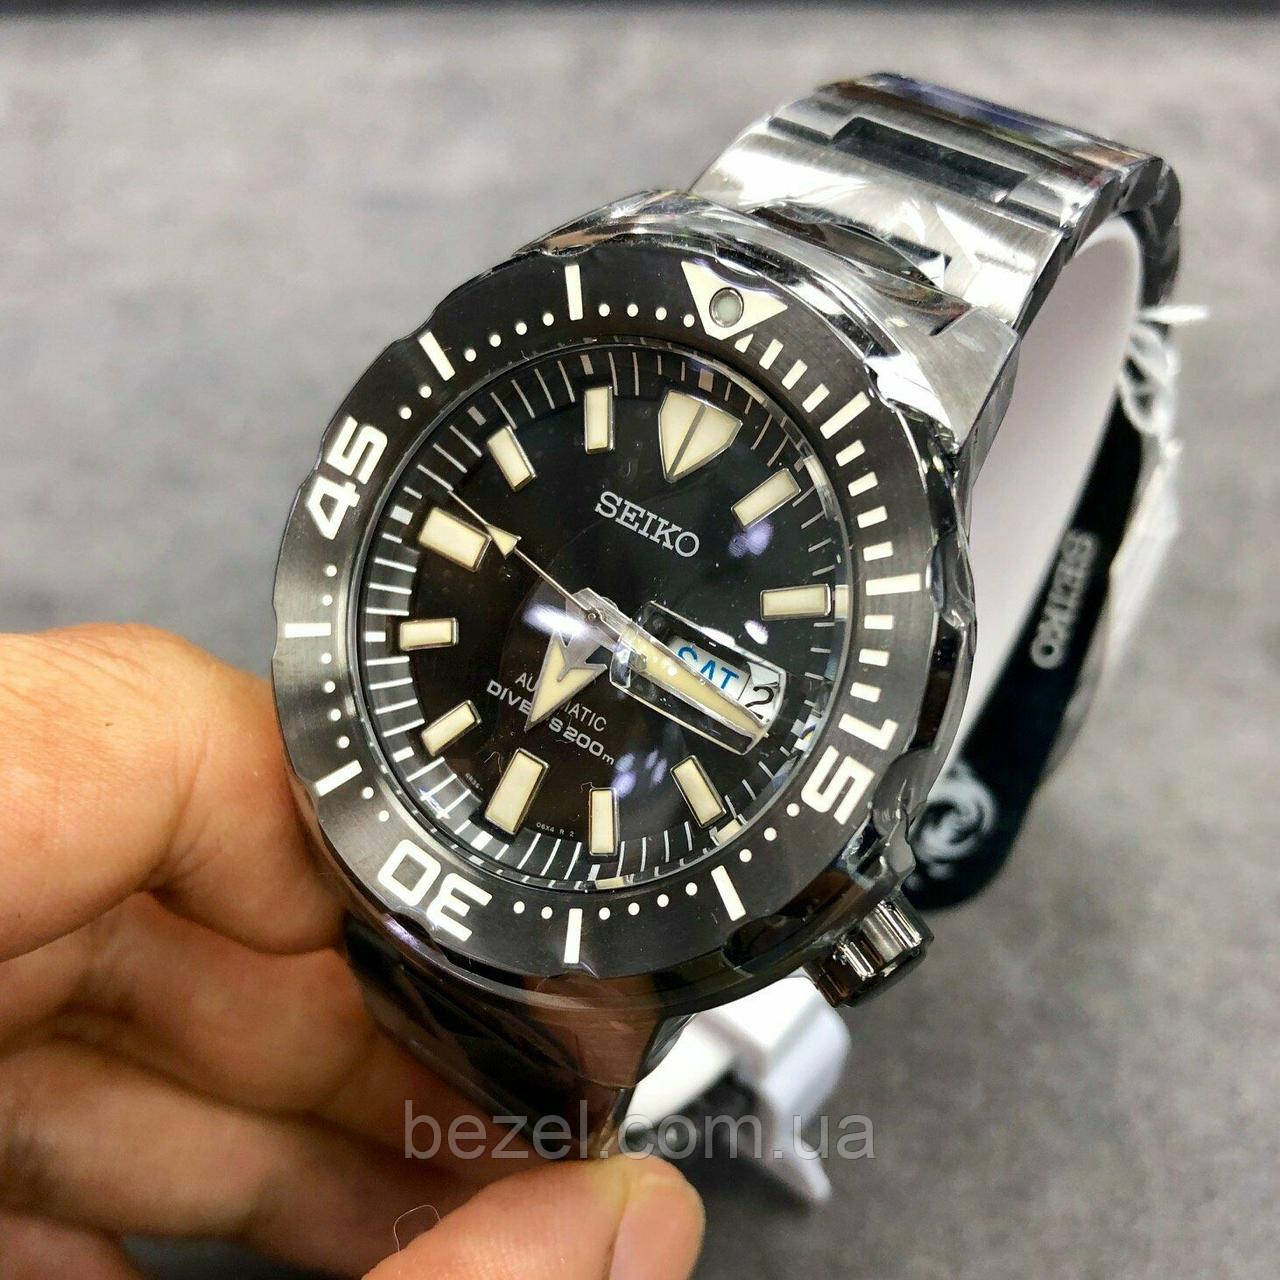 Мужские Часы Seiko SRPD29 MONSTER Prospex Automatic Black — Купить Недорого  на  (1444300870)